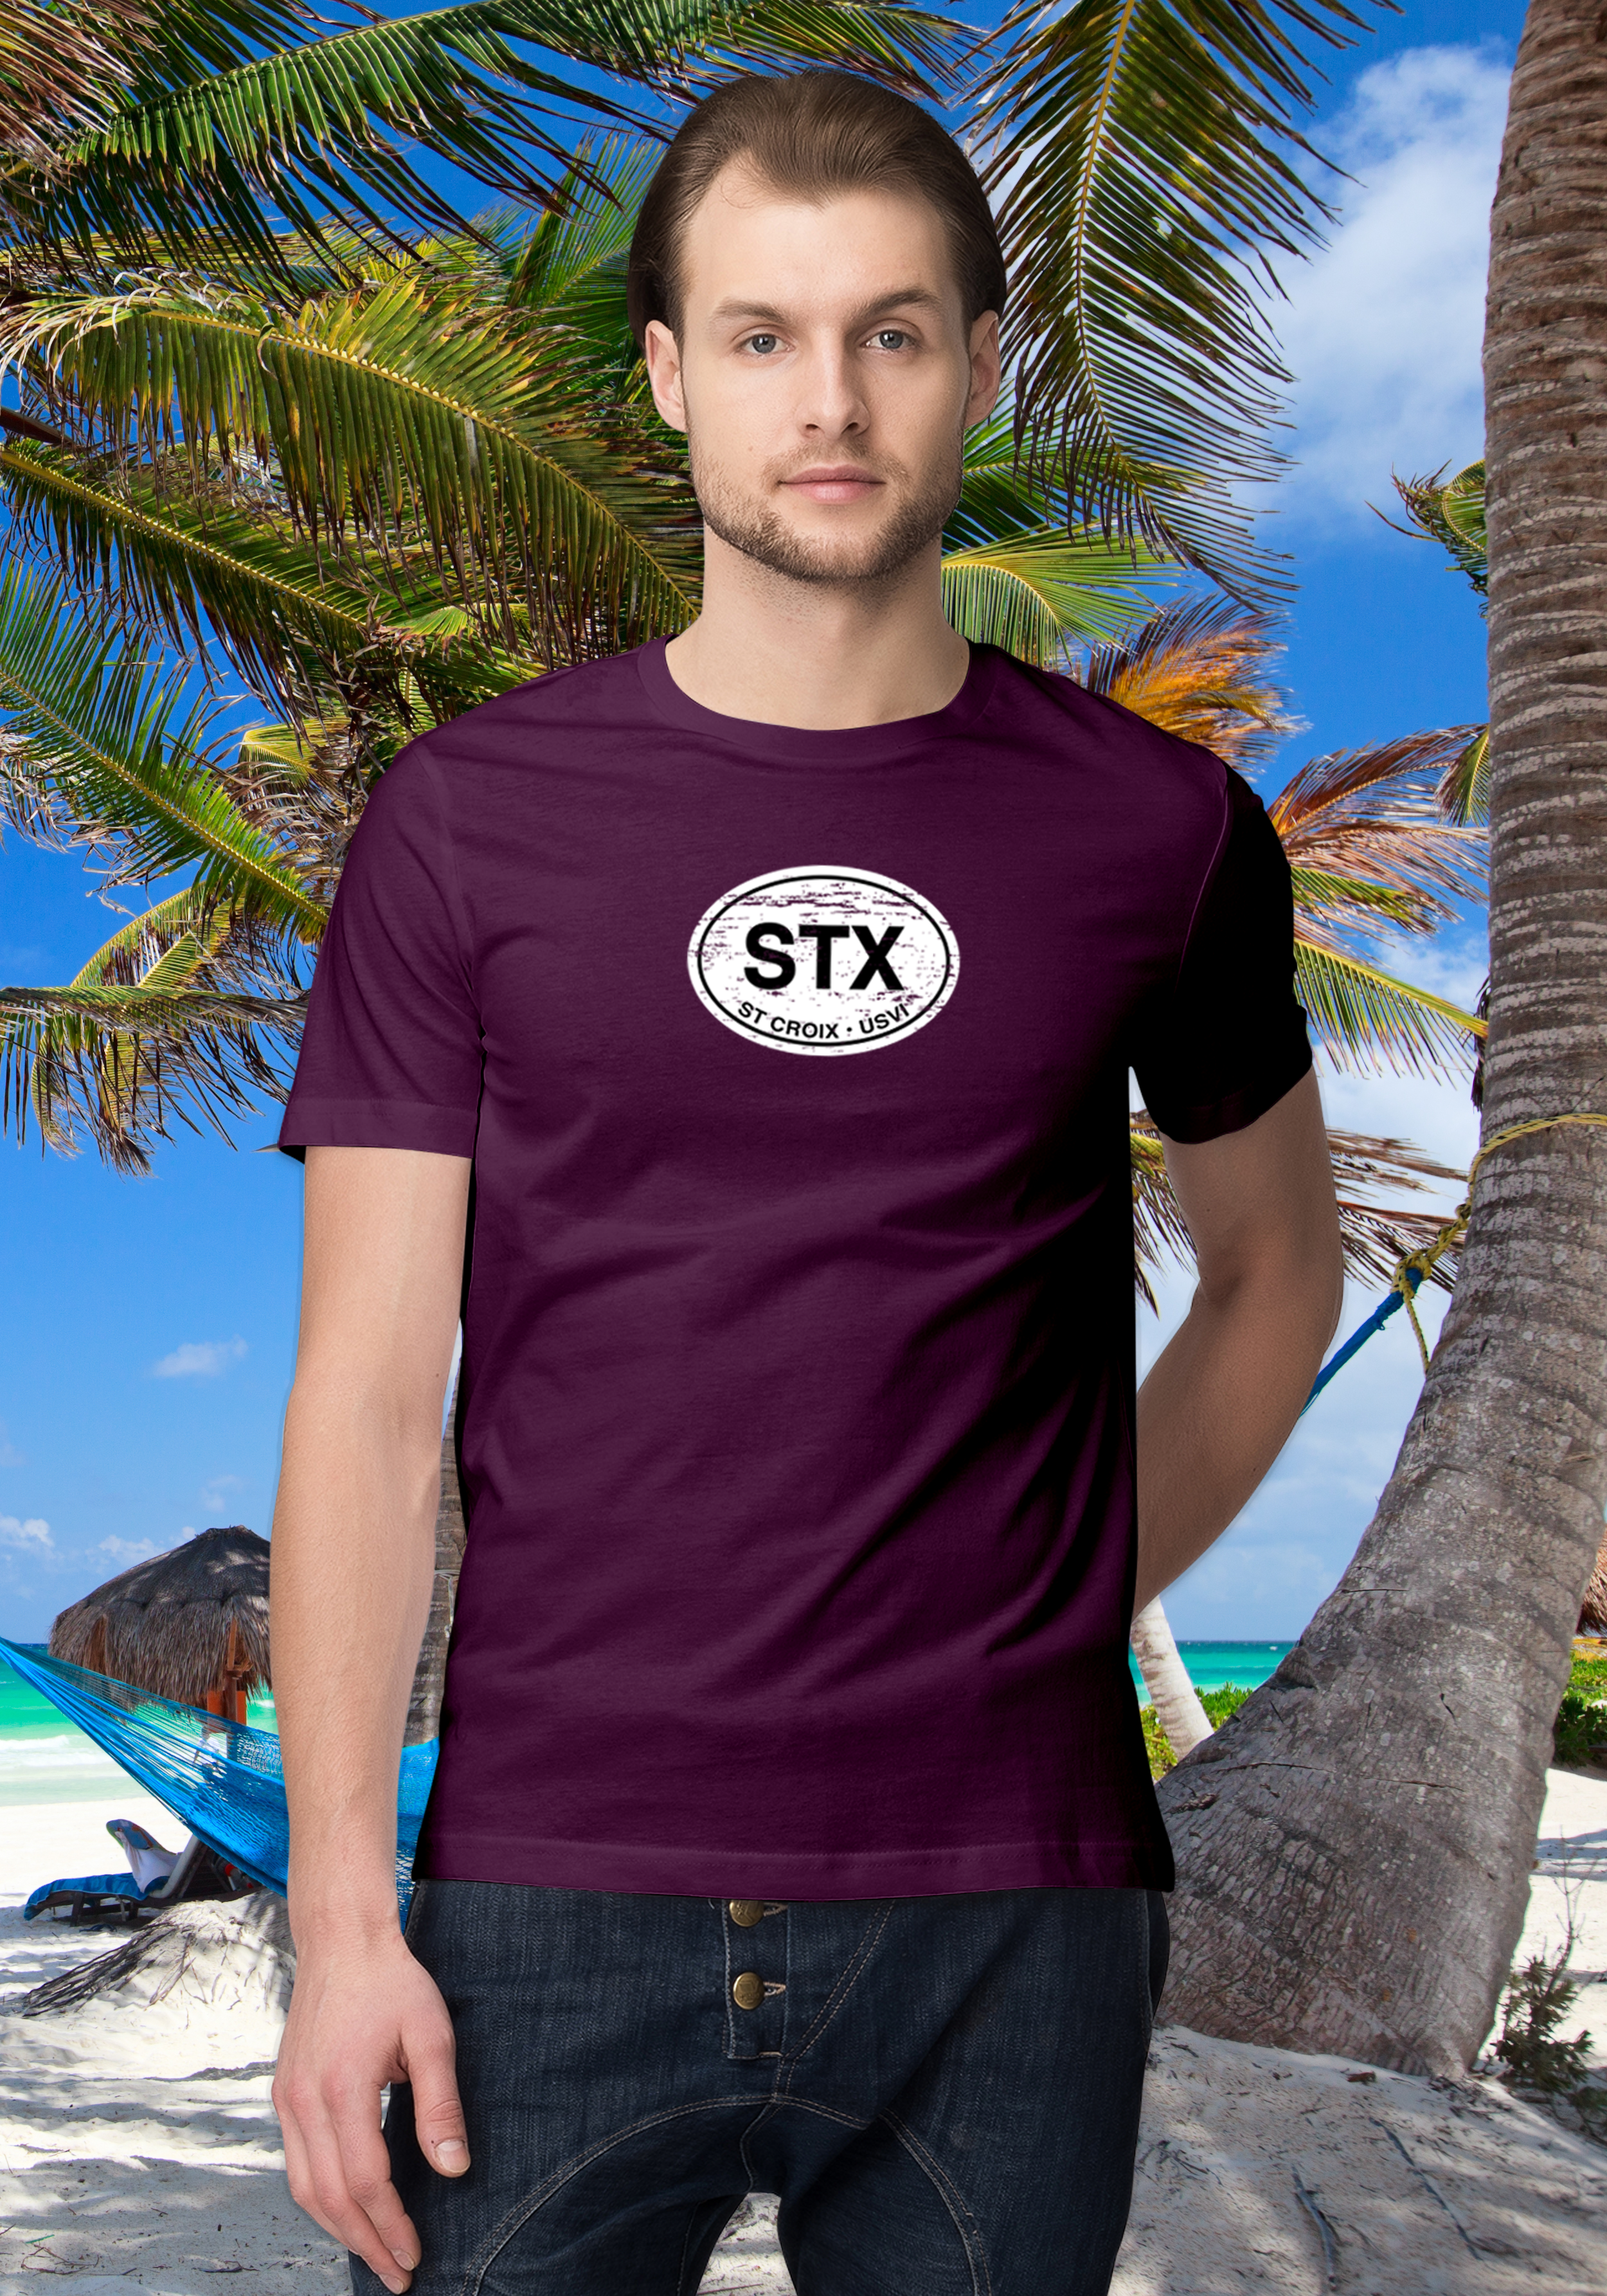 St Croix Men's Classic T-Shirt Souvenirs - My Destination Location